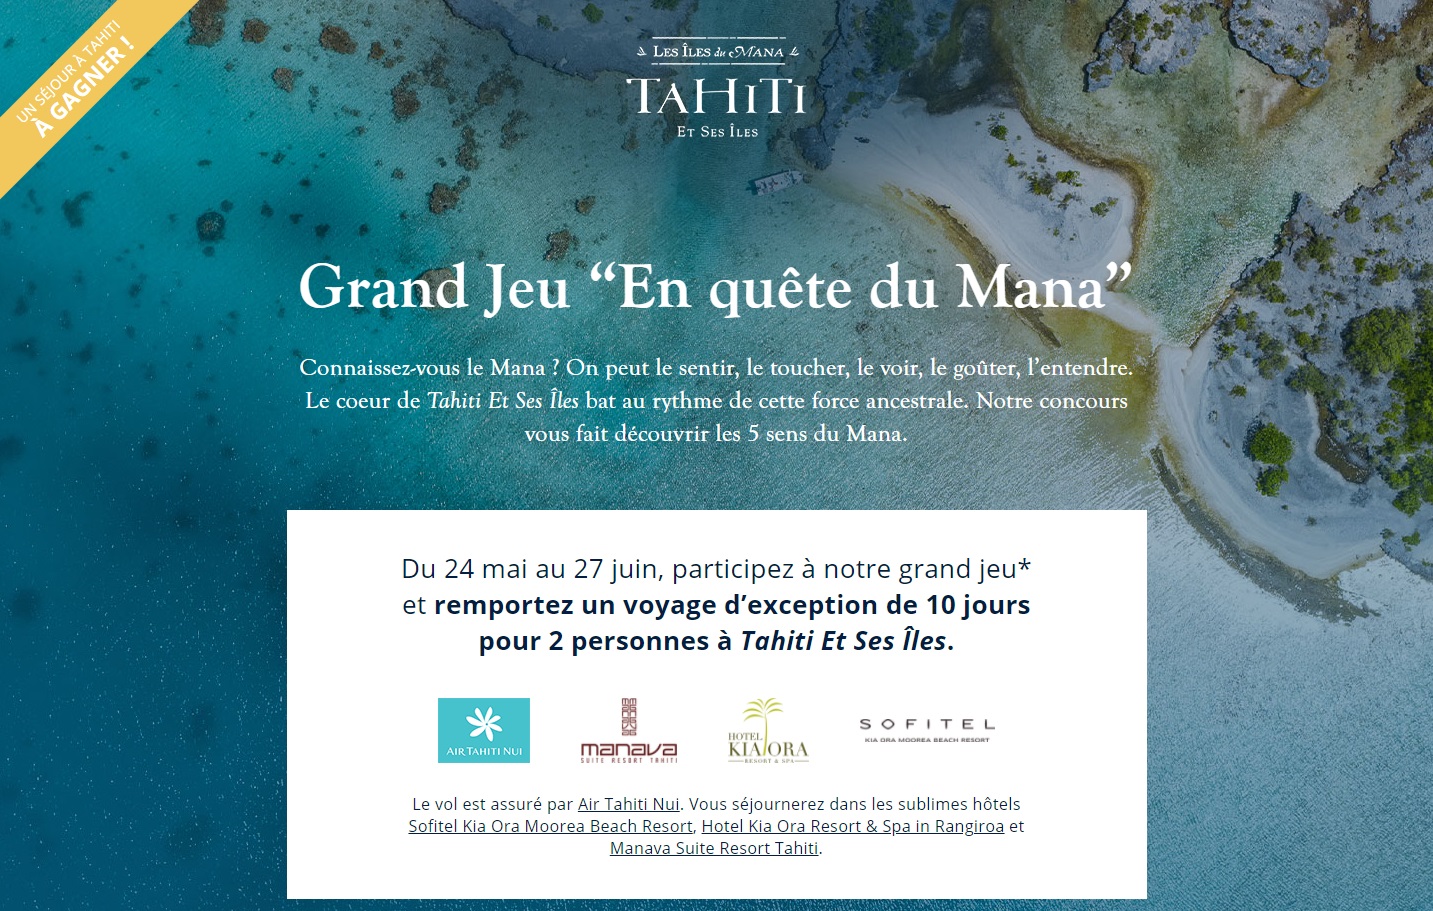 Tahiti et Ses Îles lance un jeu concours. Les participants pourront gagner un séjour en Polynésie française - DR